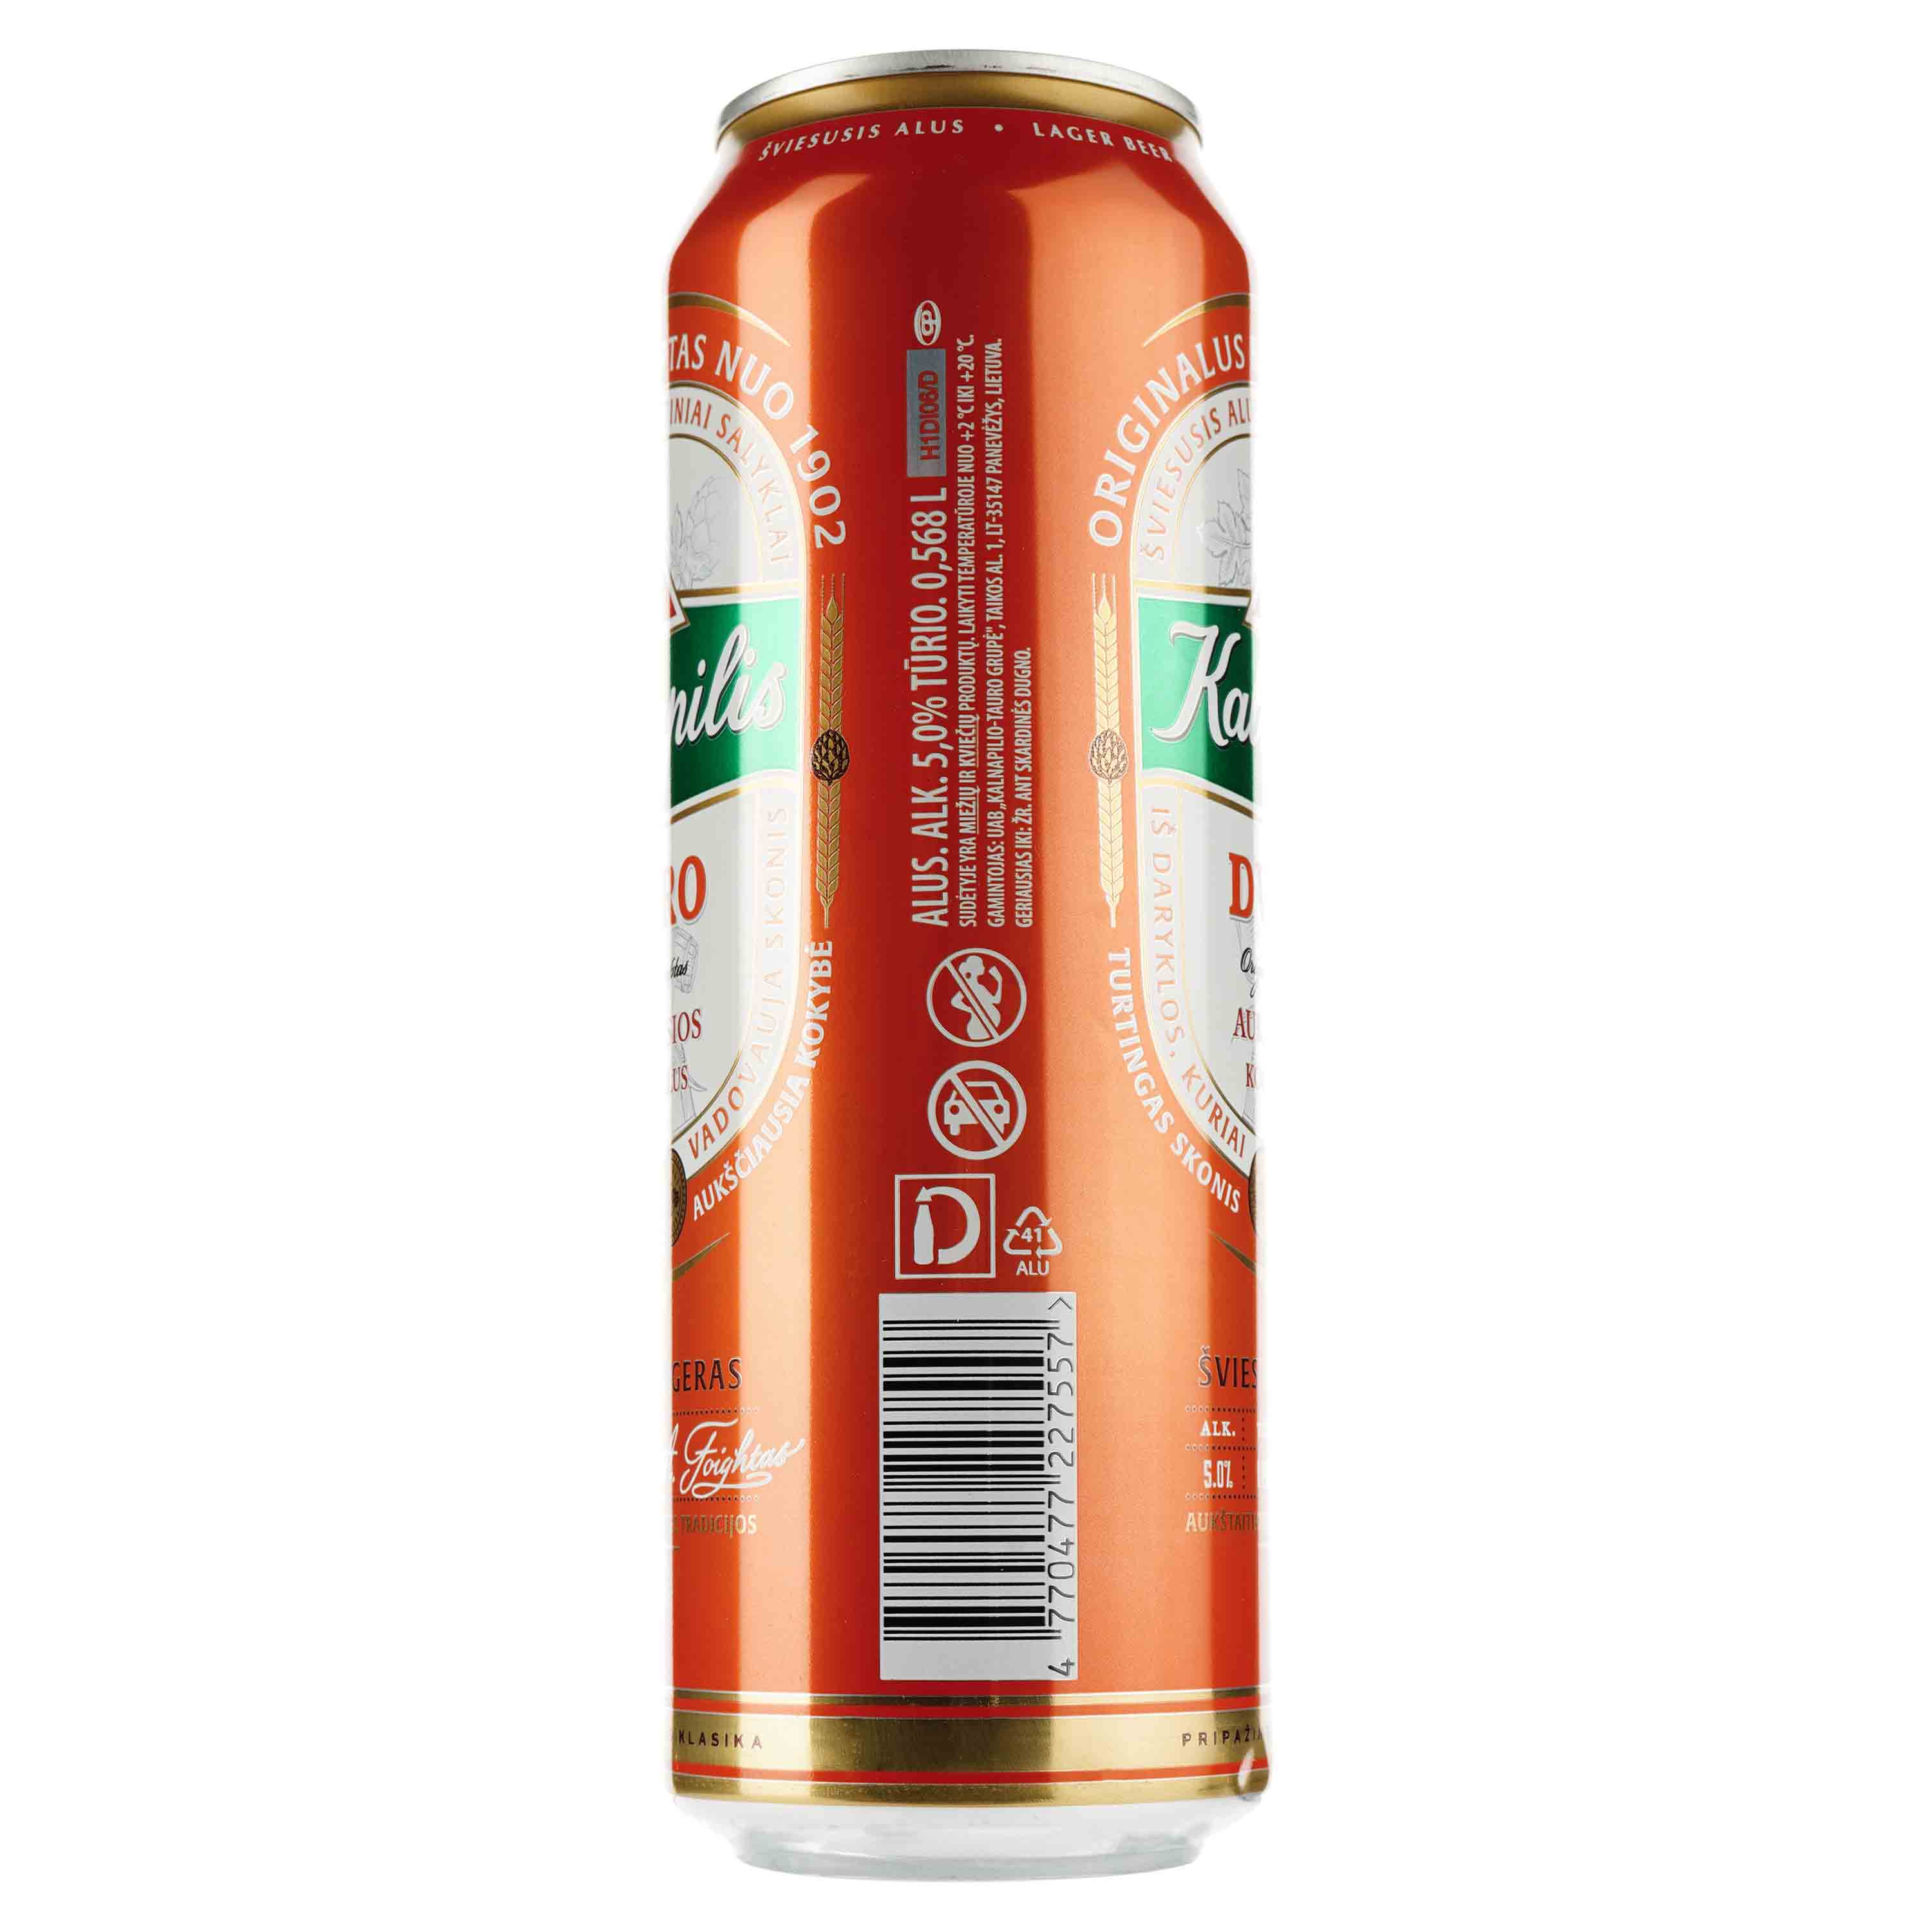 Пиво Kalnapilis Dvaro, світле, фільтроване, 5%, з/б, 0,568 л - фото 2